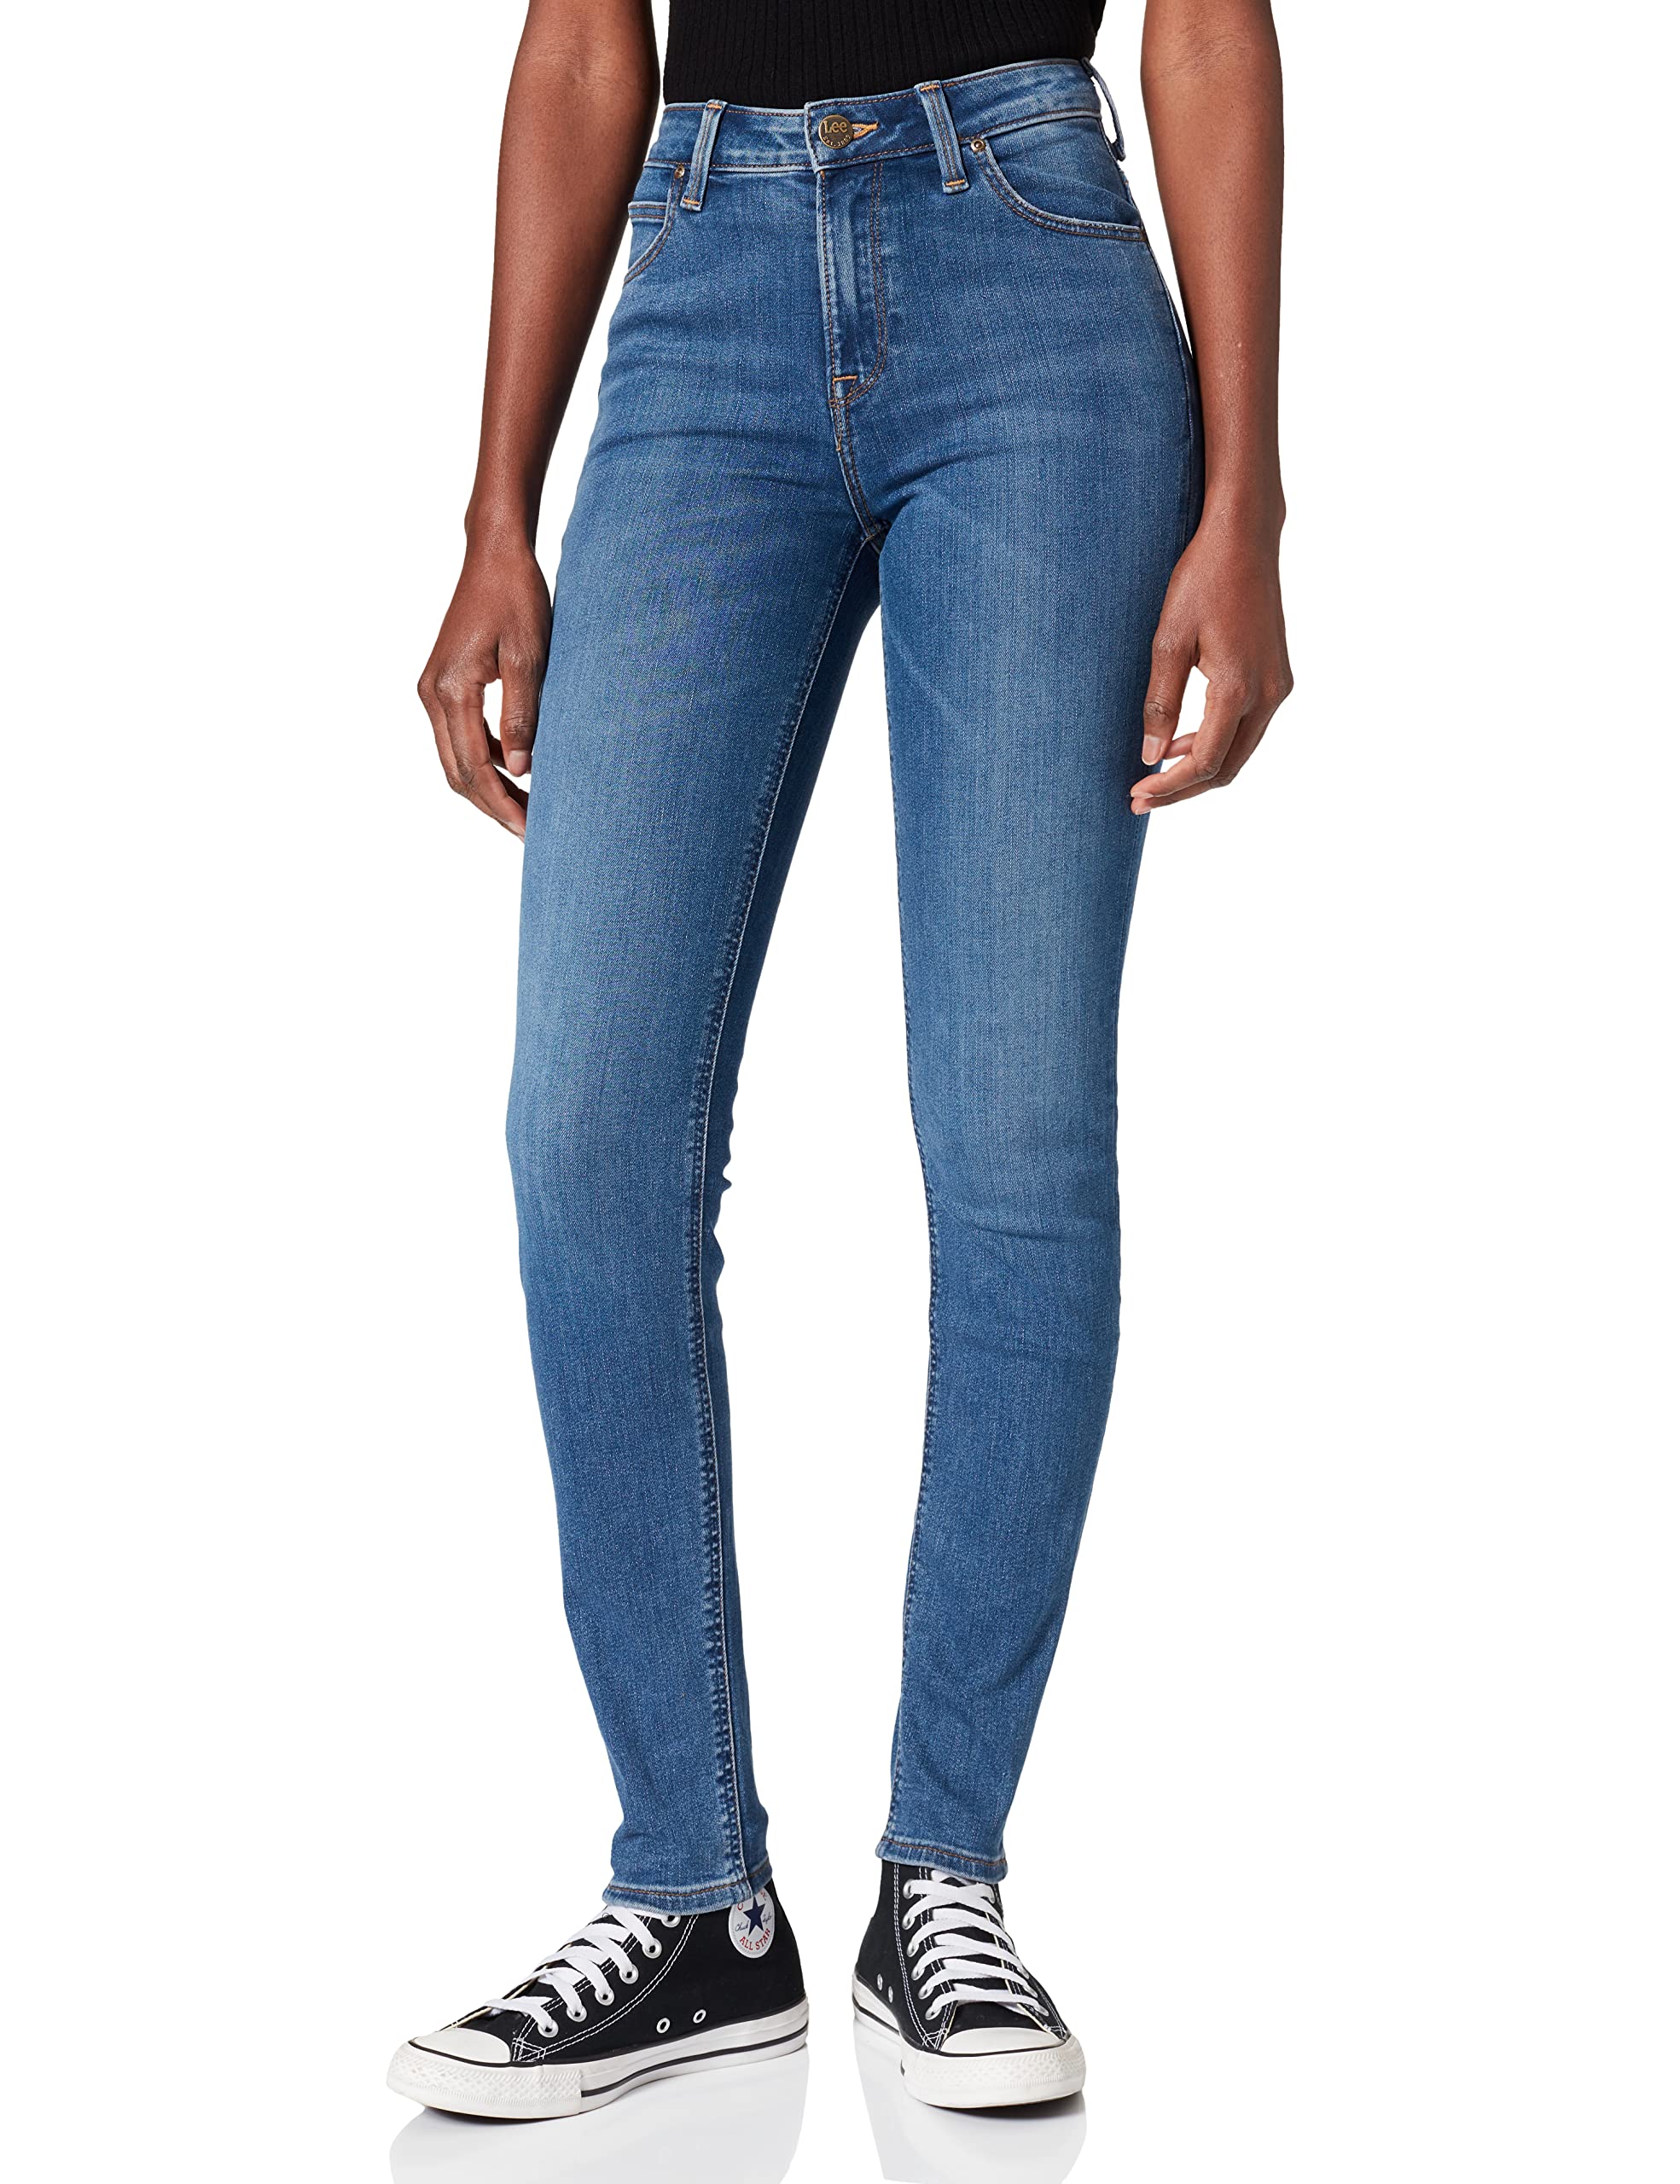 Lee Damen Scarlett High Jeans, Blau (Mid Copan Iw), 32W / 31L